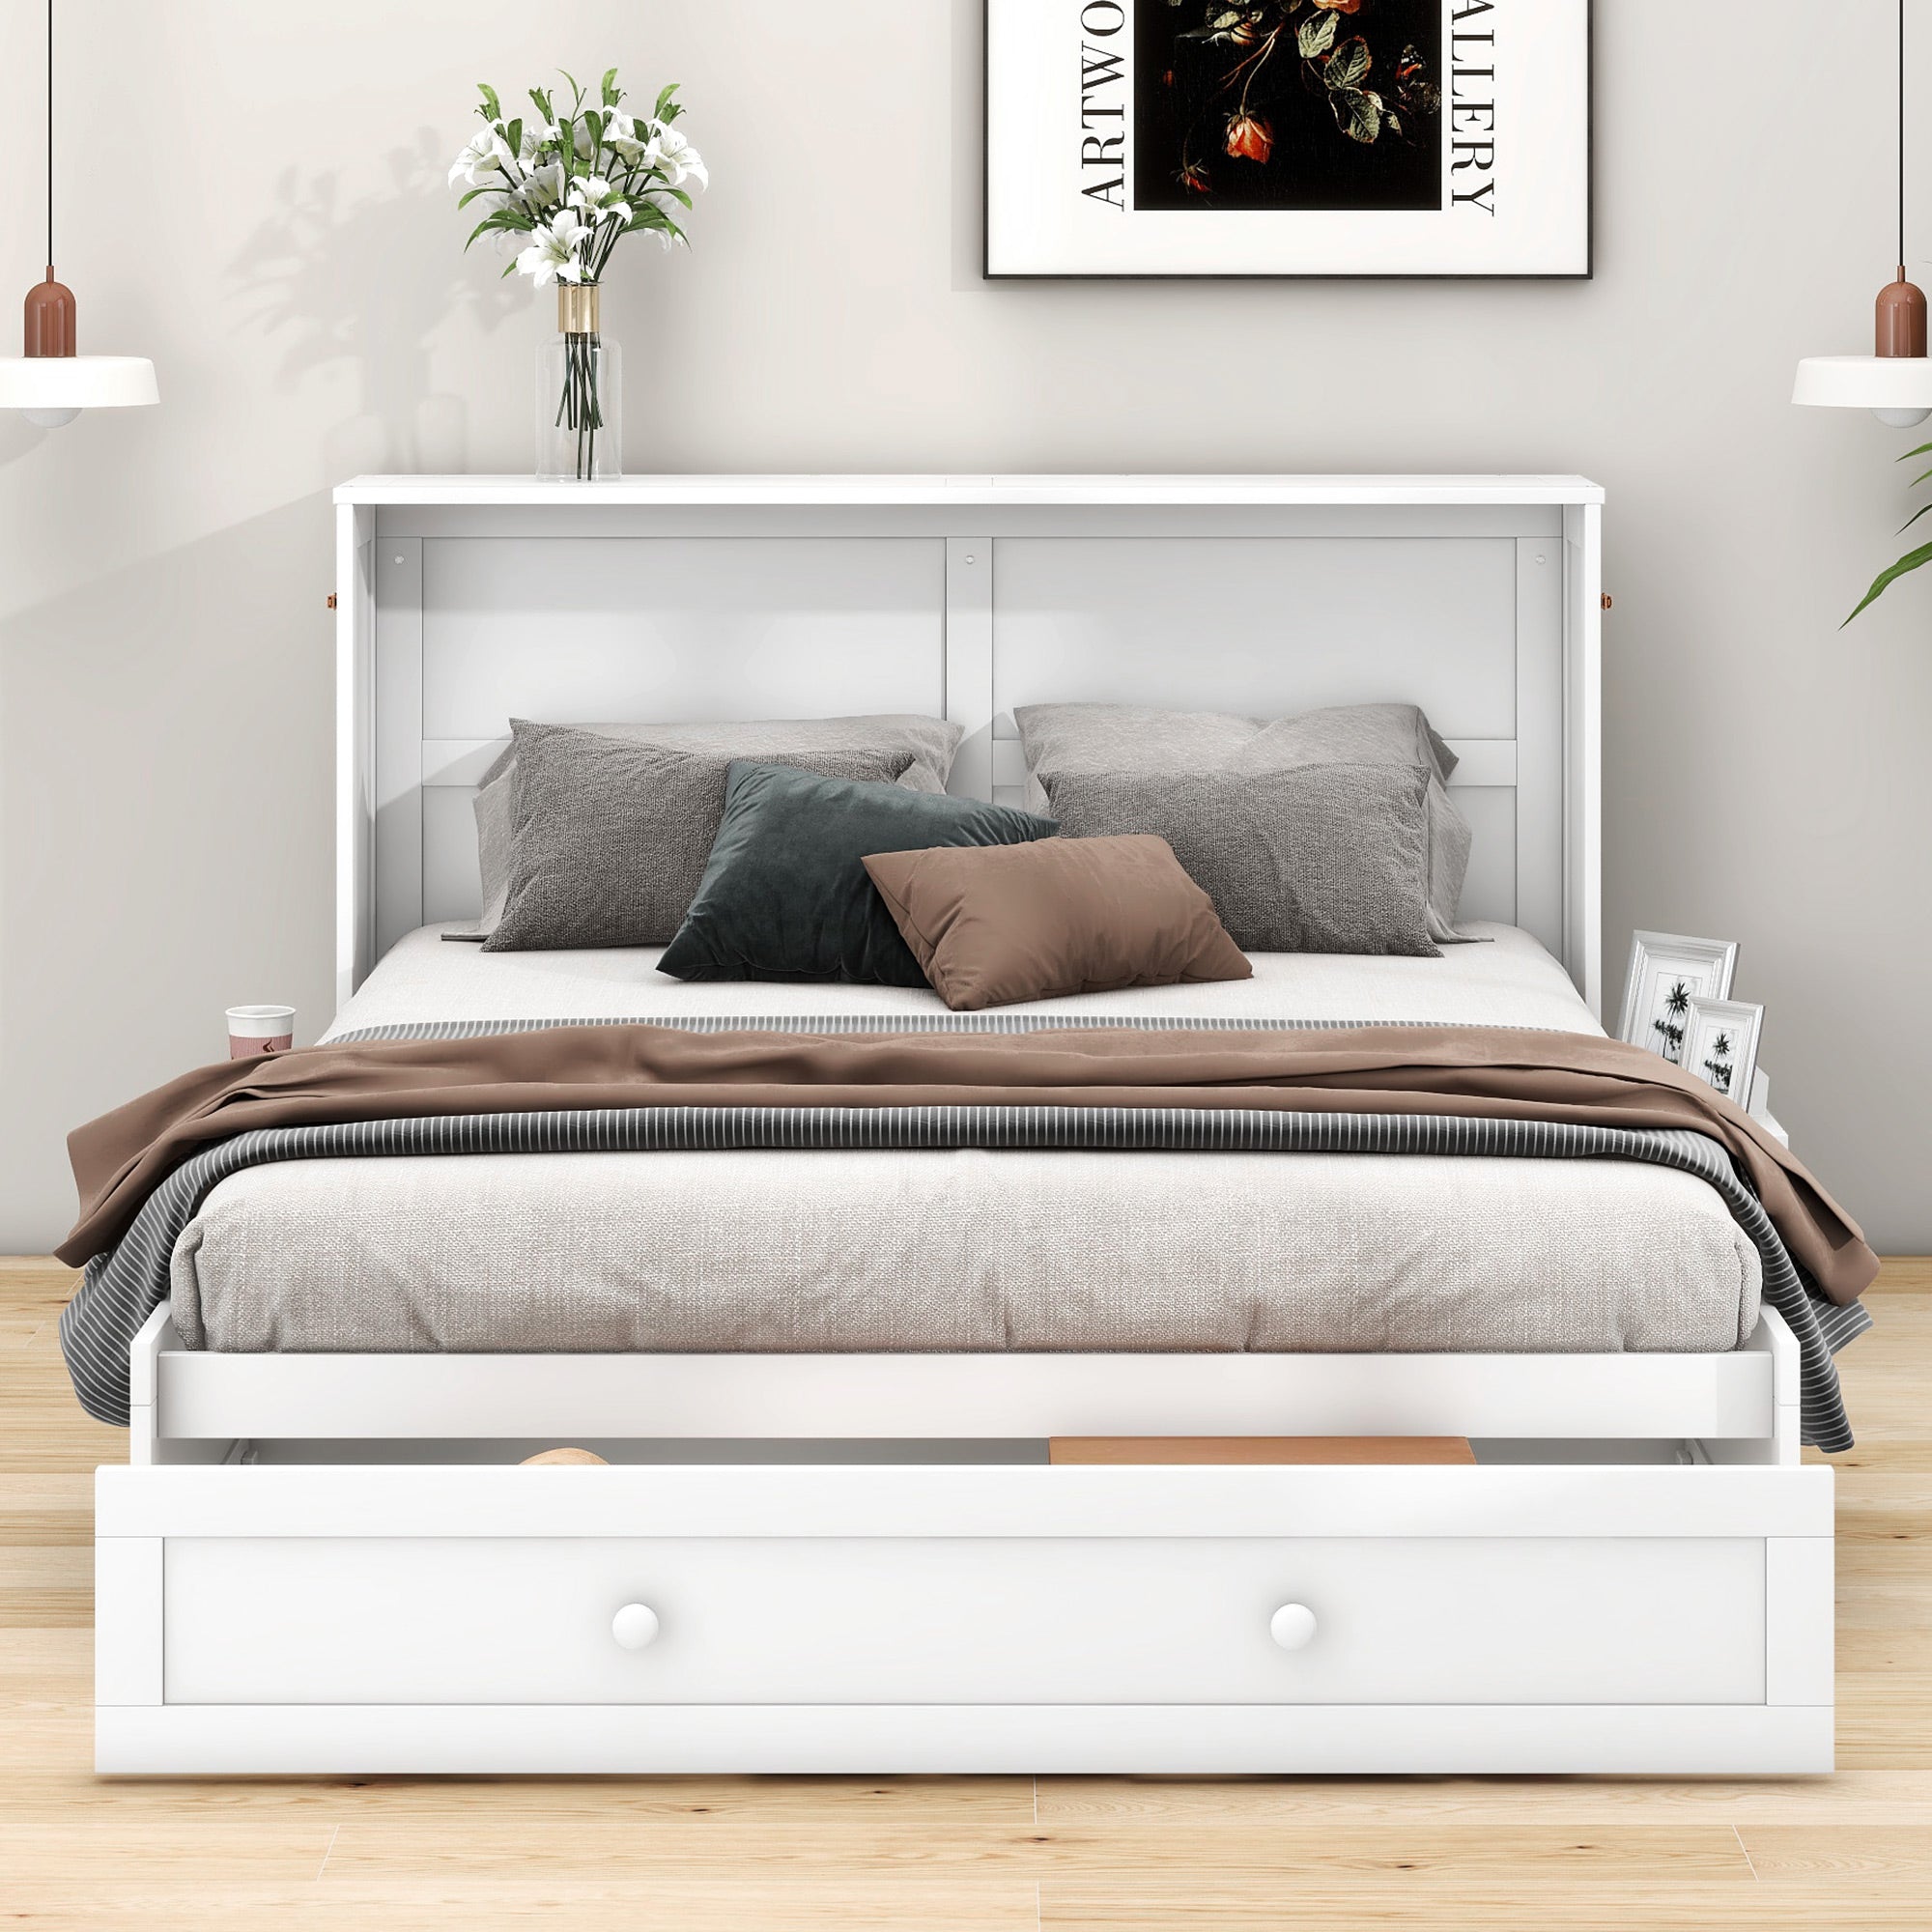 okwish Polsterbett 140 x 200 cm, mobiles Schrankbett für zu Hause, Schubladen am Ende des Bettes, kleine Ablagen an der Seite des Bettes, umwandelbares Plattformbett, weiß